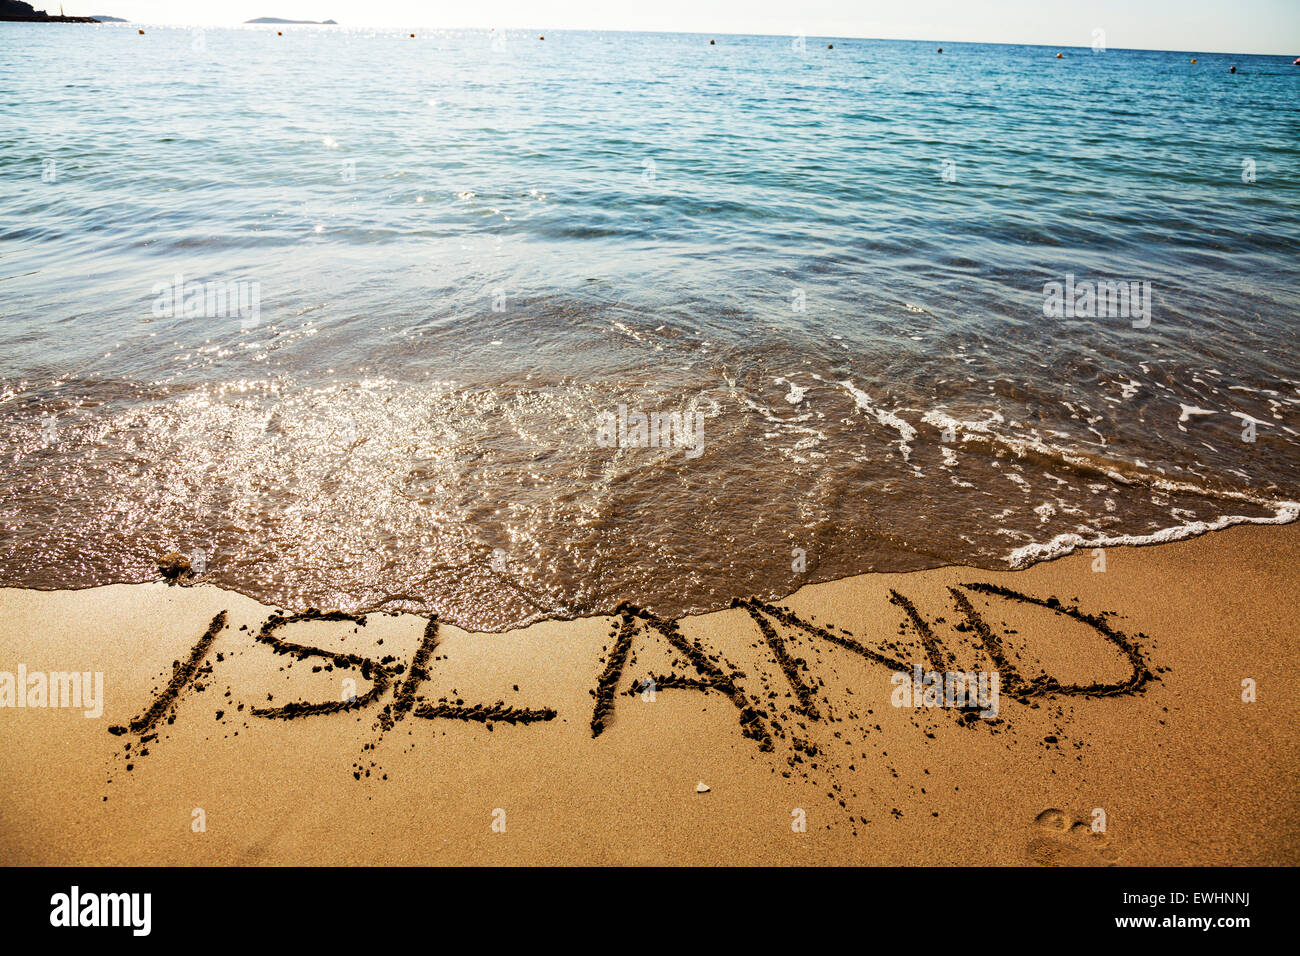 Insel im Sand Wort geschrieben einsame Wüste am Strand Küste Meer Küste Ibiza Spanien Spanisch Santa Eulalia Del Rio Ibiza resort Stockfoto